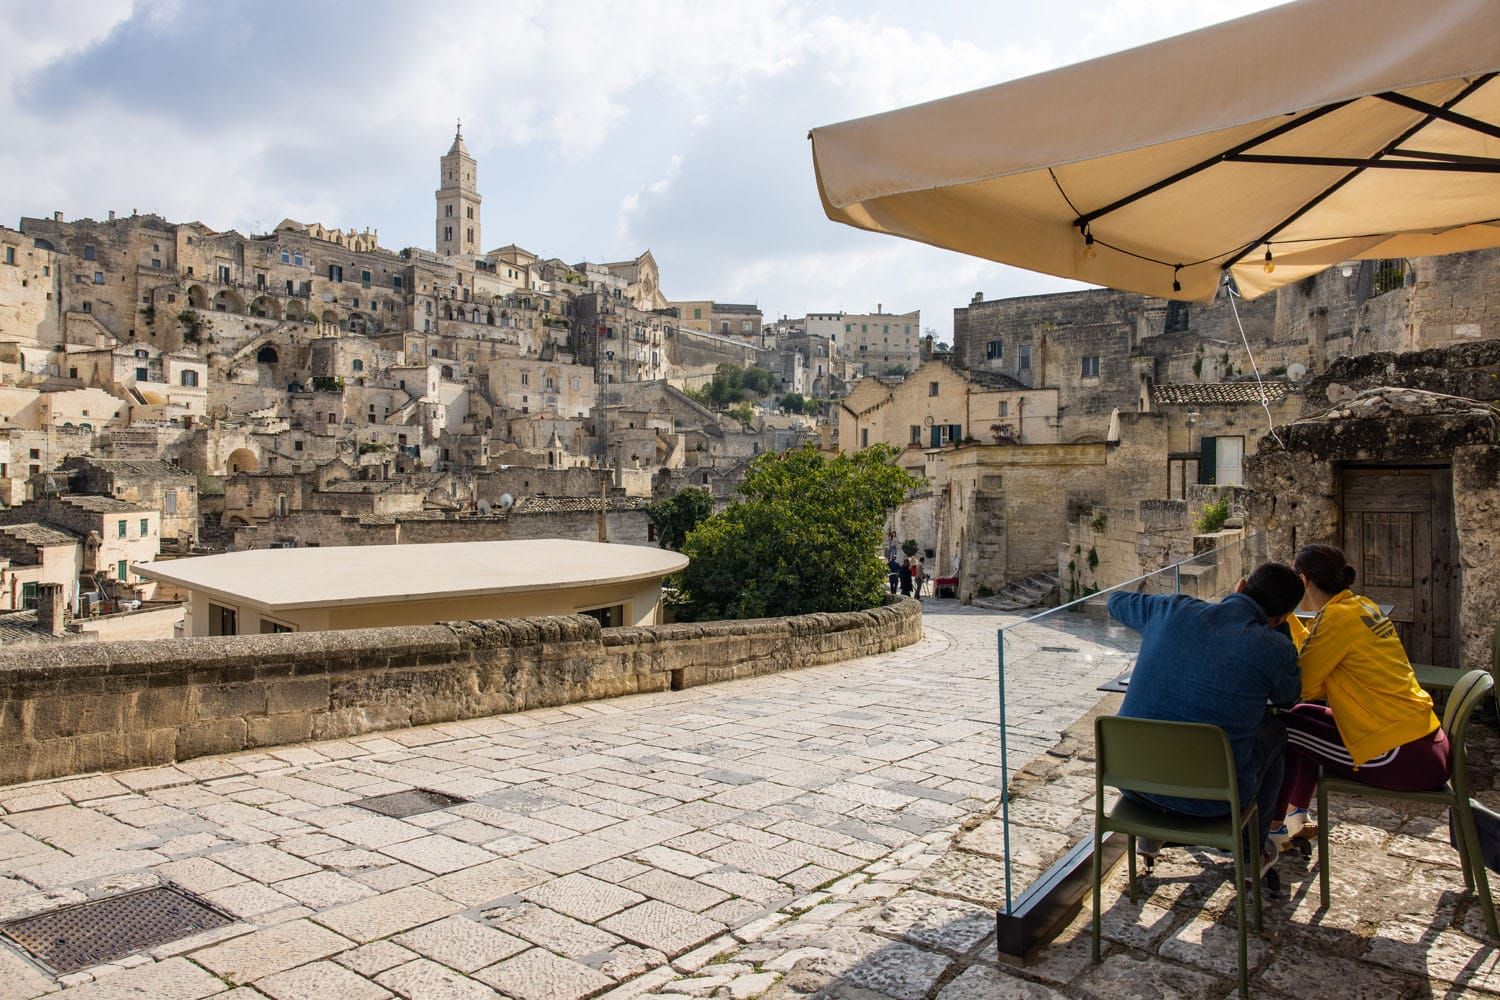 La Nicchia View | Where to eat in Matera